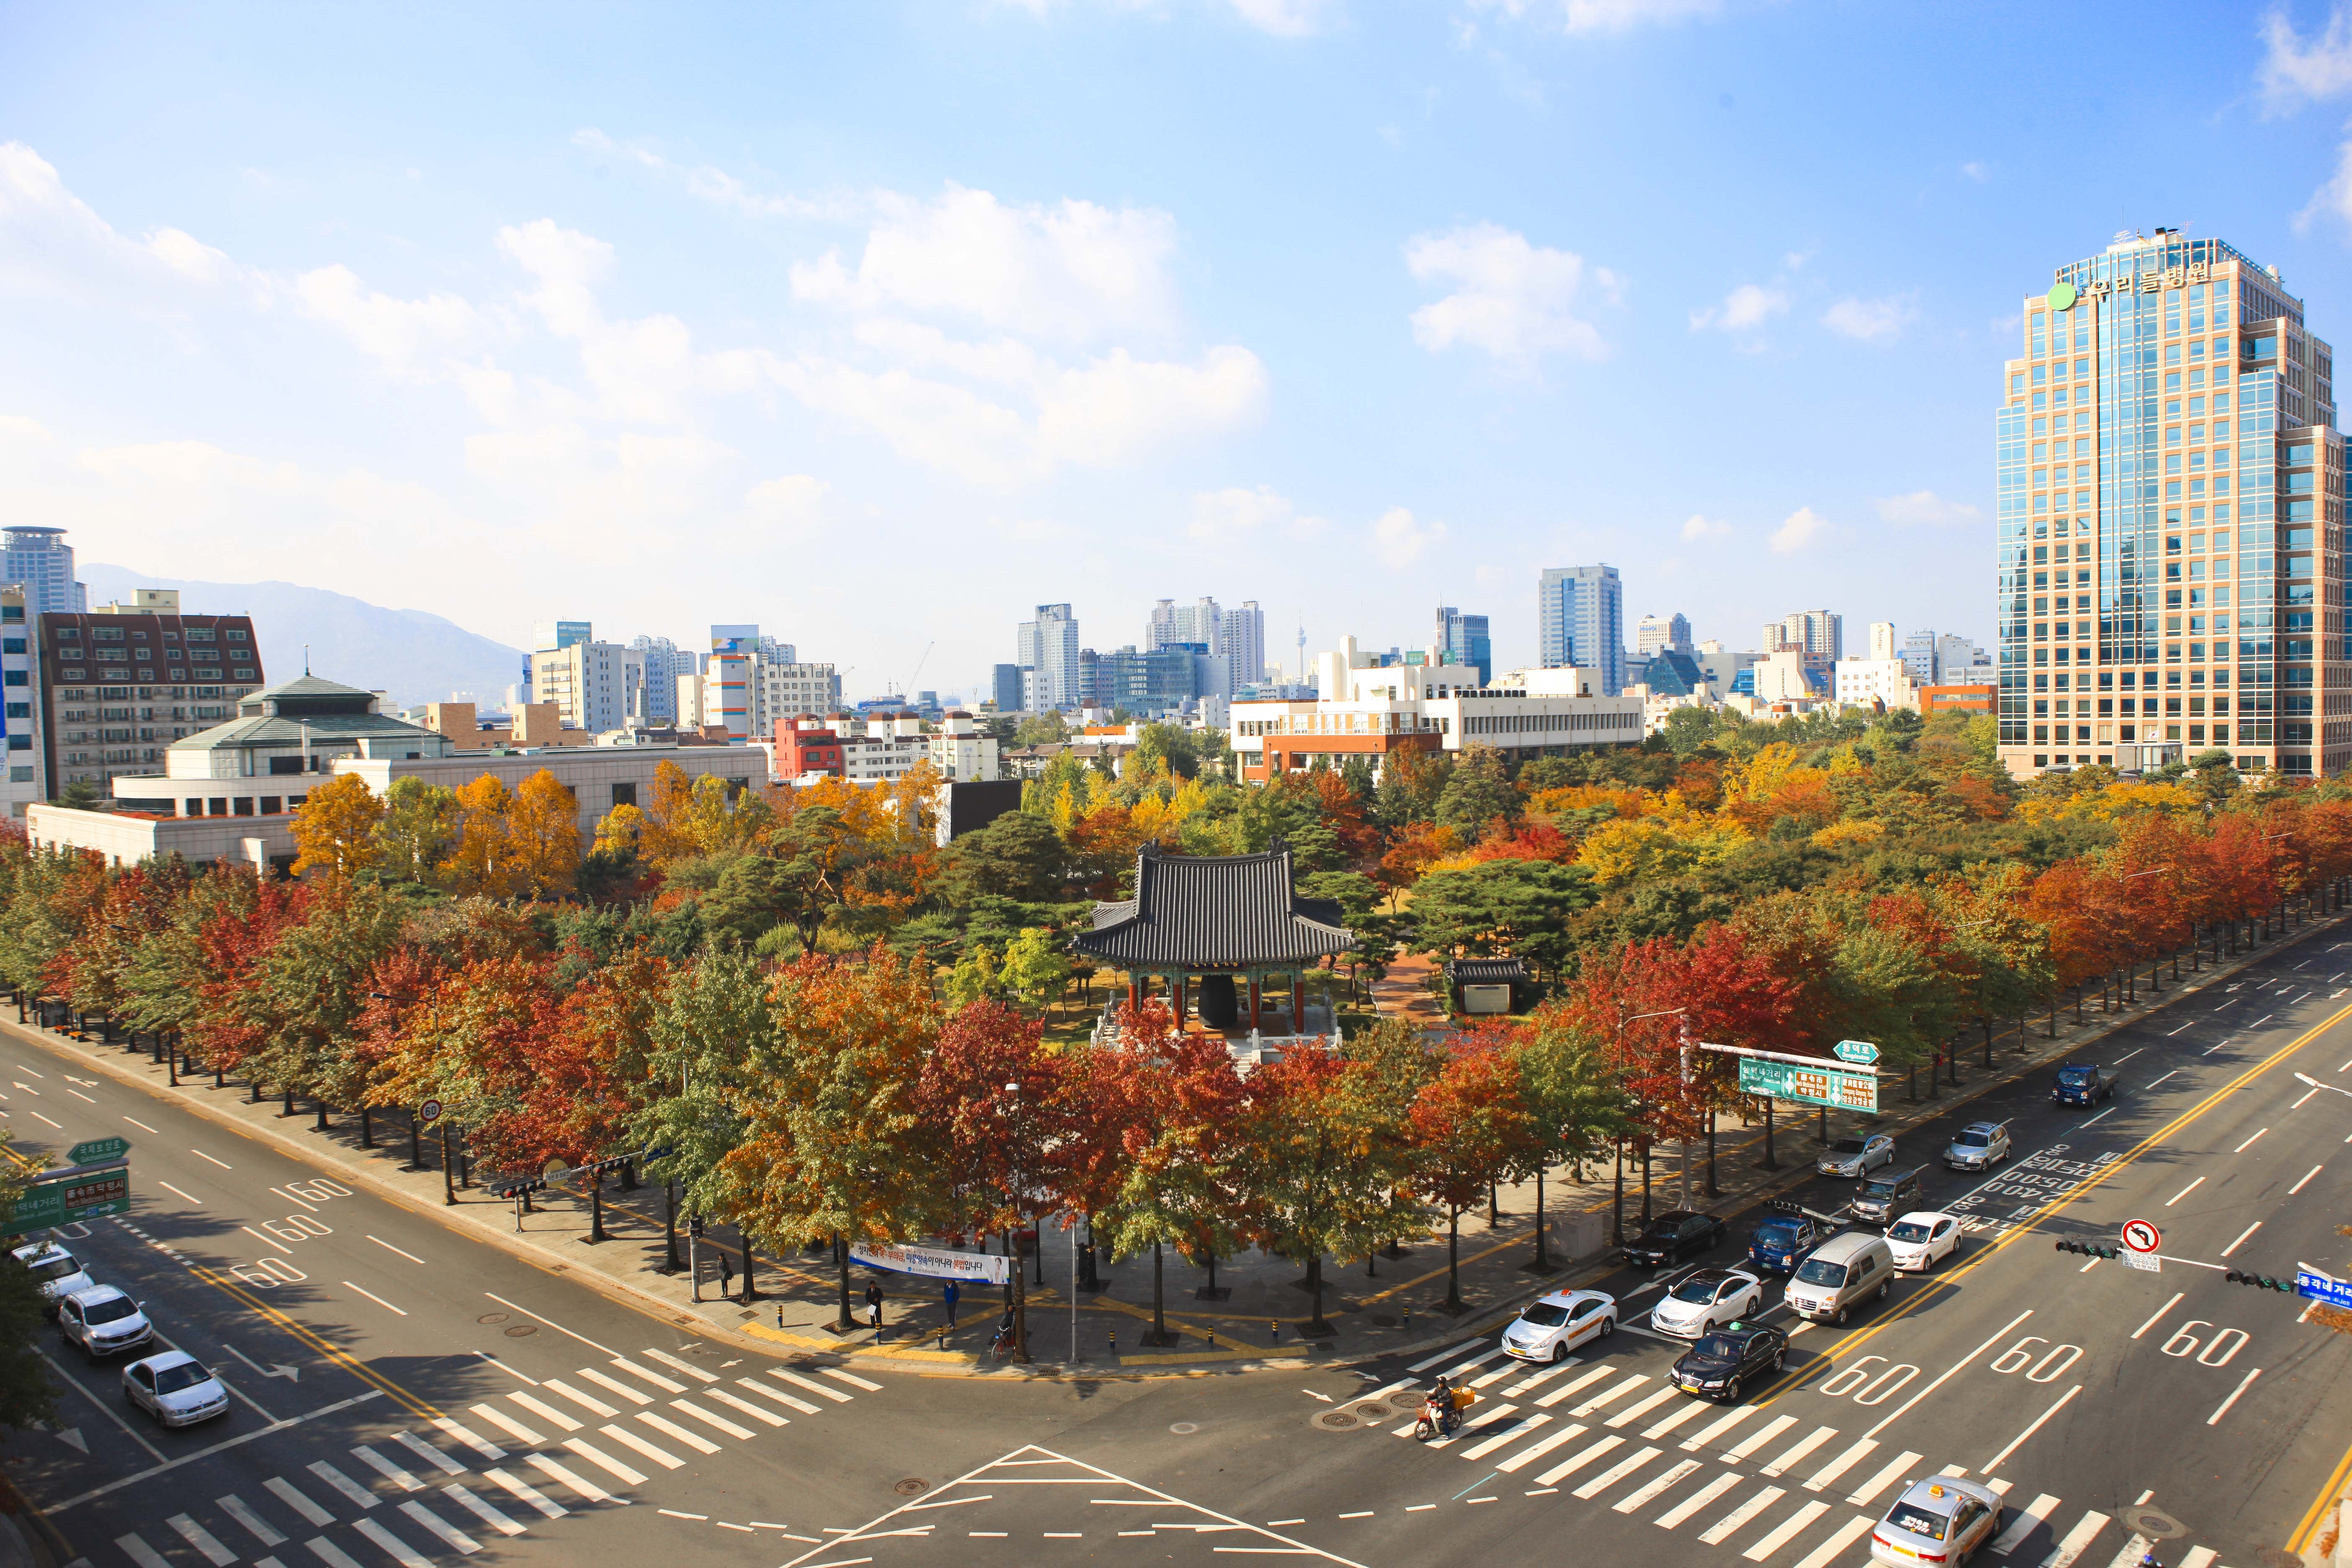 Autumn in Daegu!